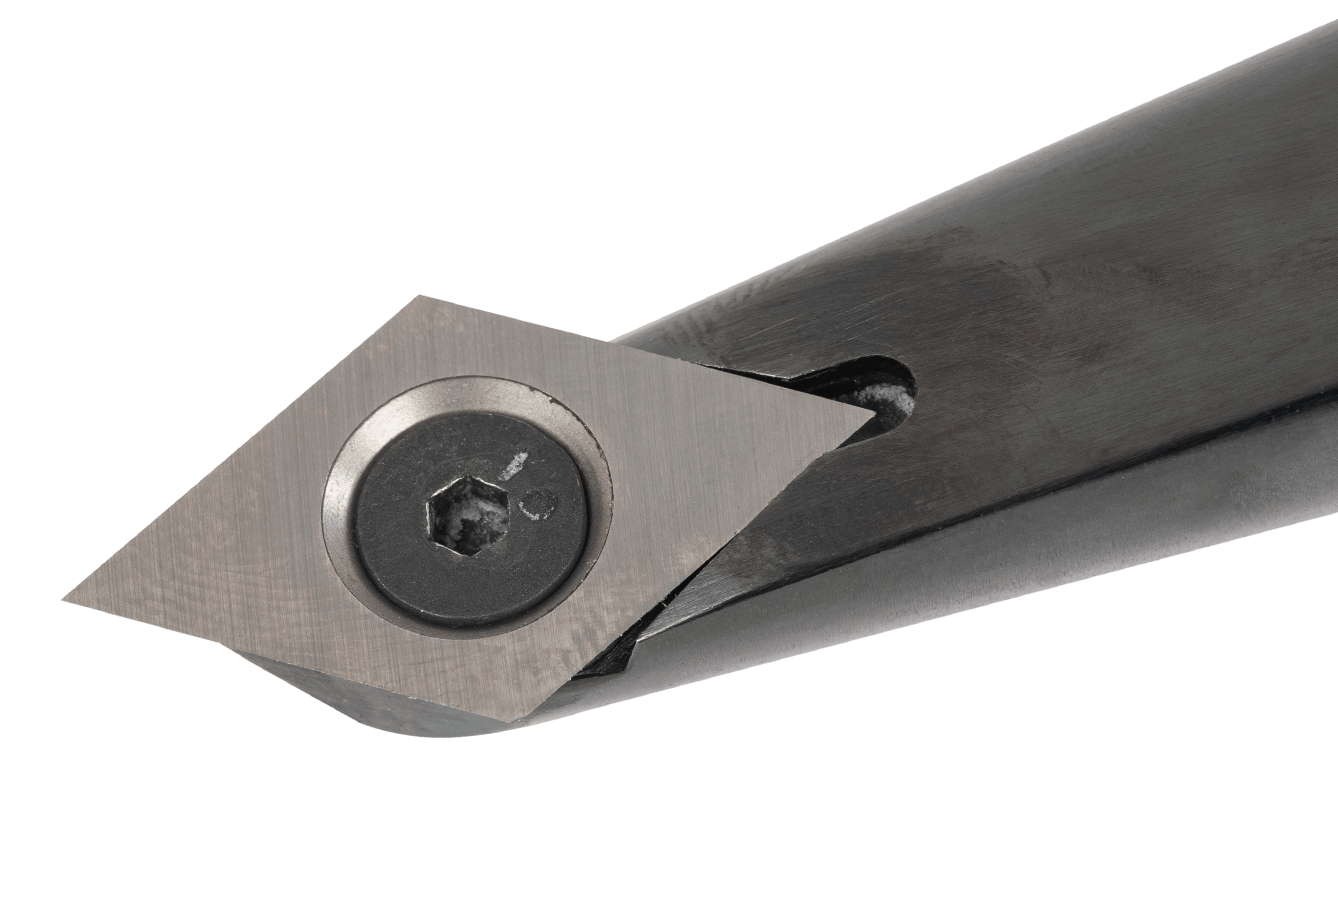 Crown Carbide Pro Detail Tip Turning Tool